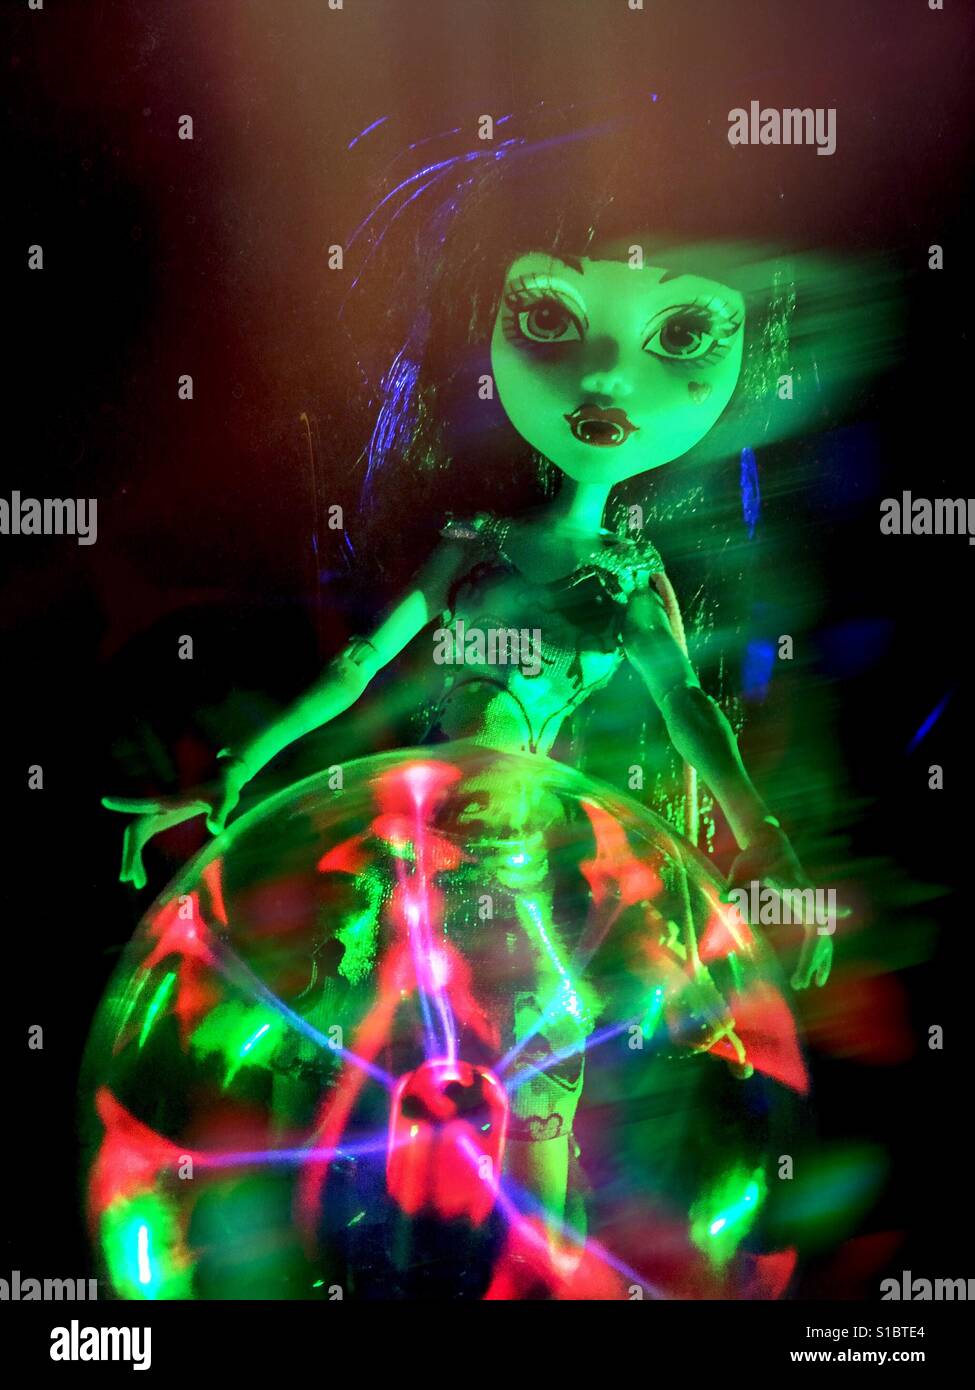 Un jouet Monster High poupée avec maquillage gothique se tient derrière un plasma rougeoyant orb, avec effet fantomatique. Banque D'Images